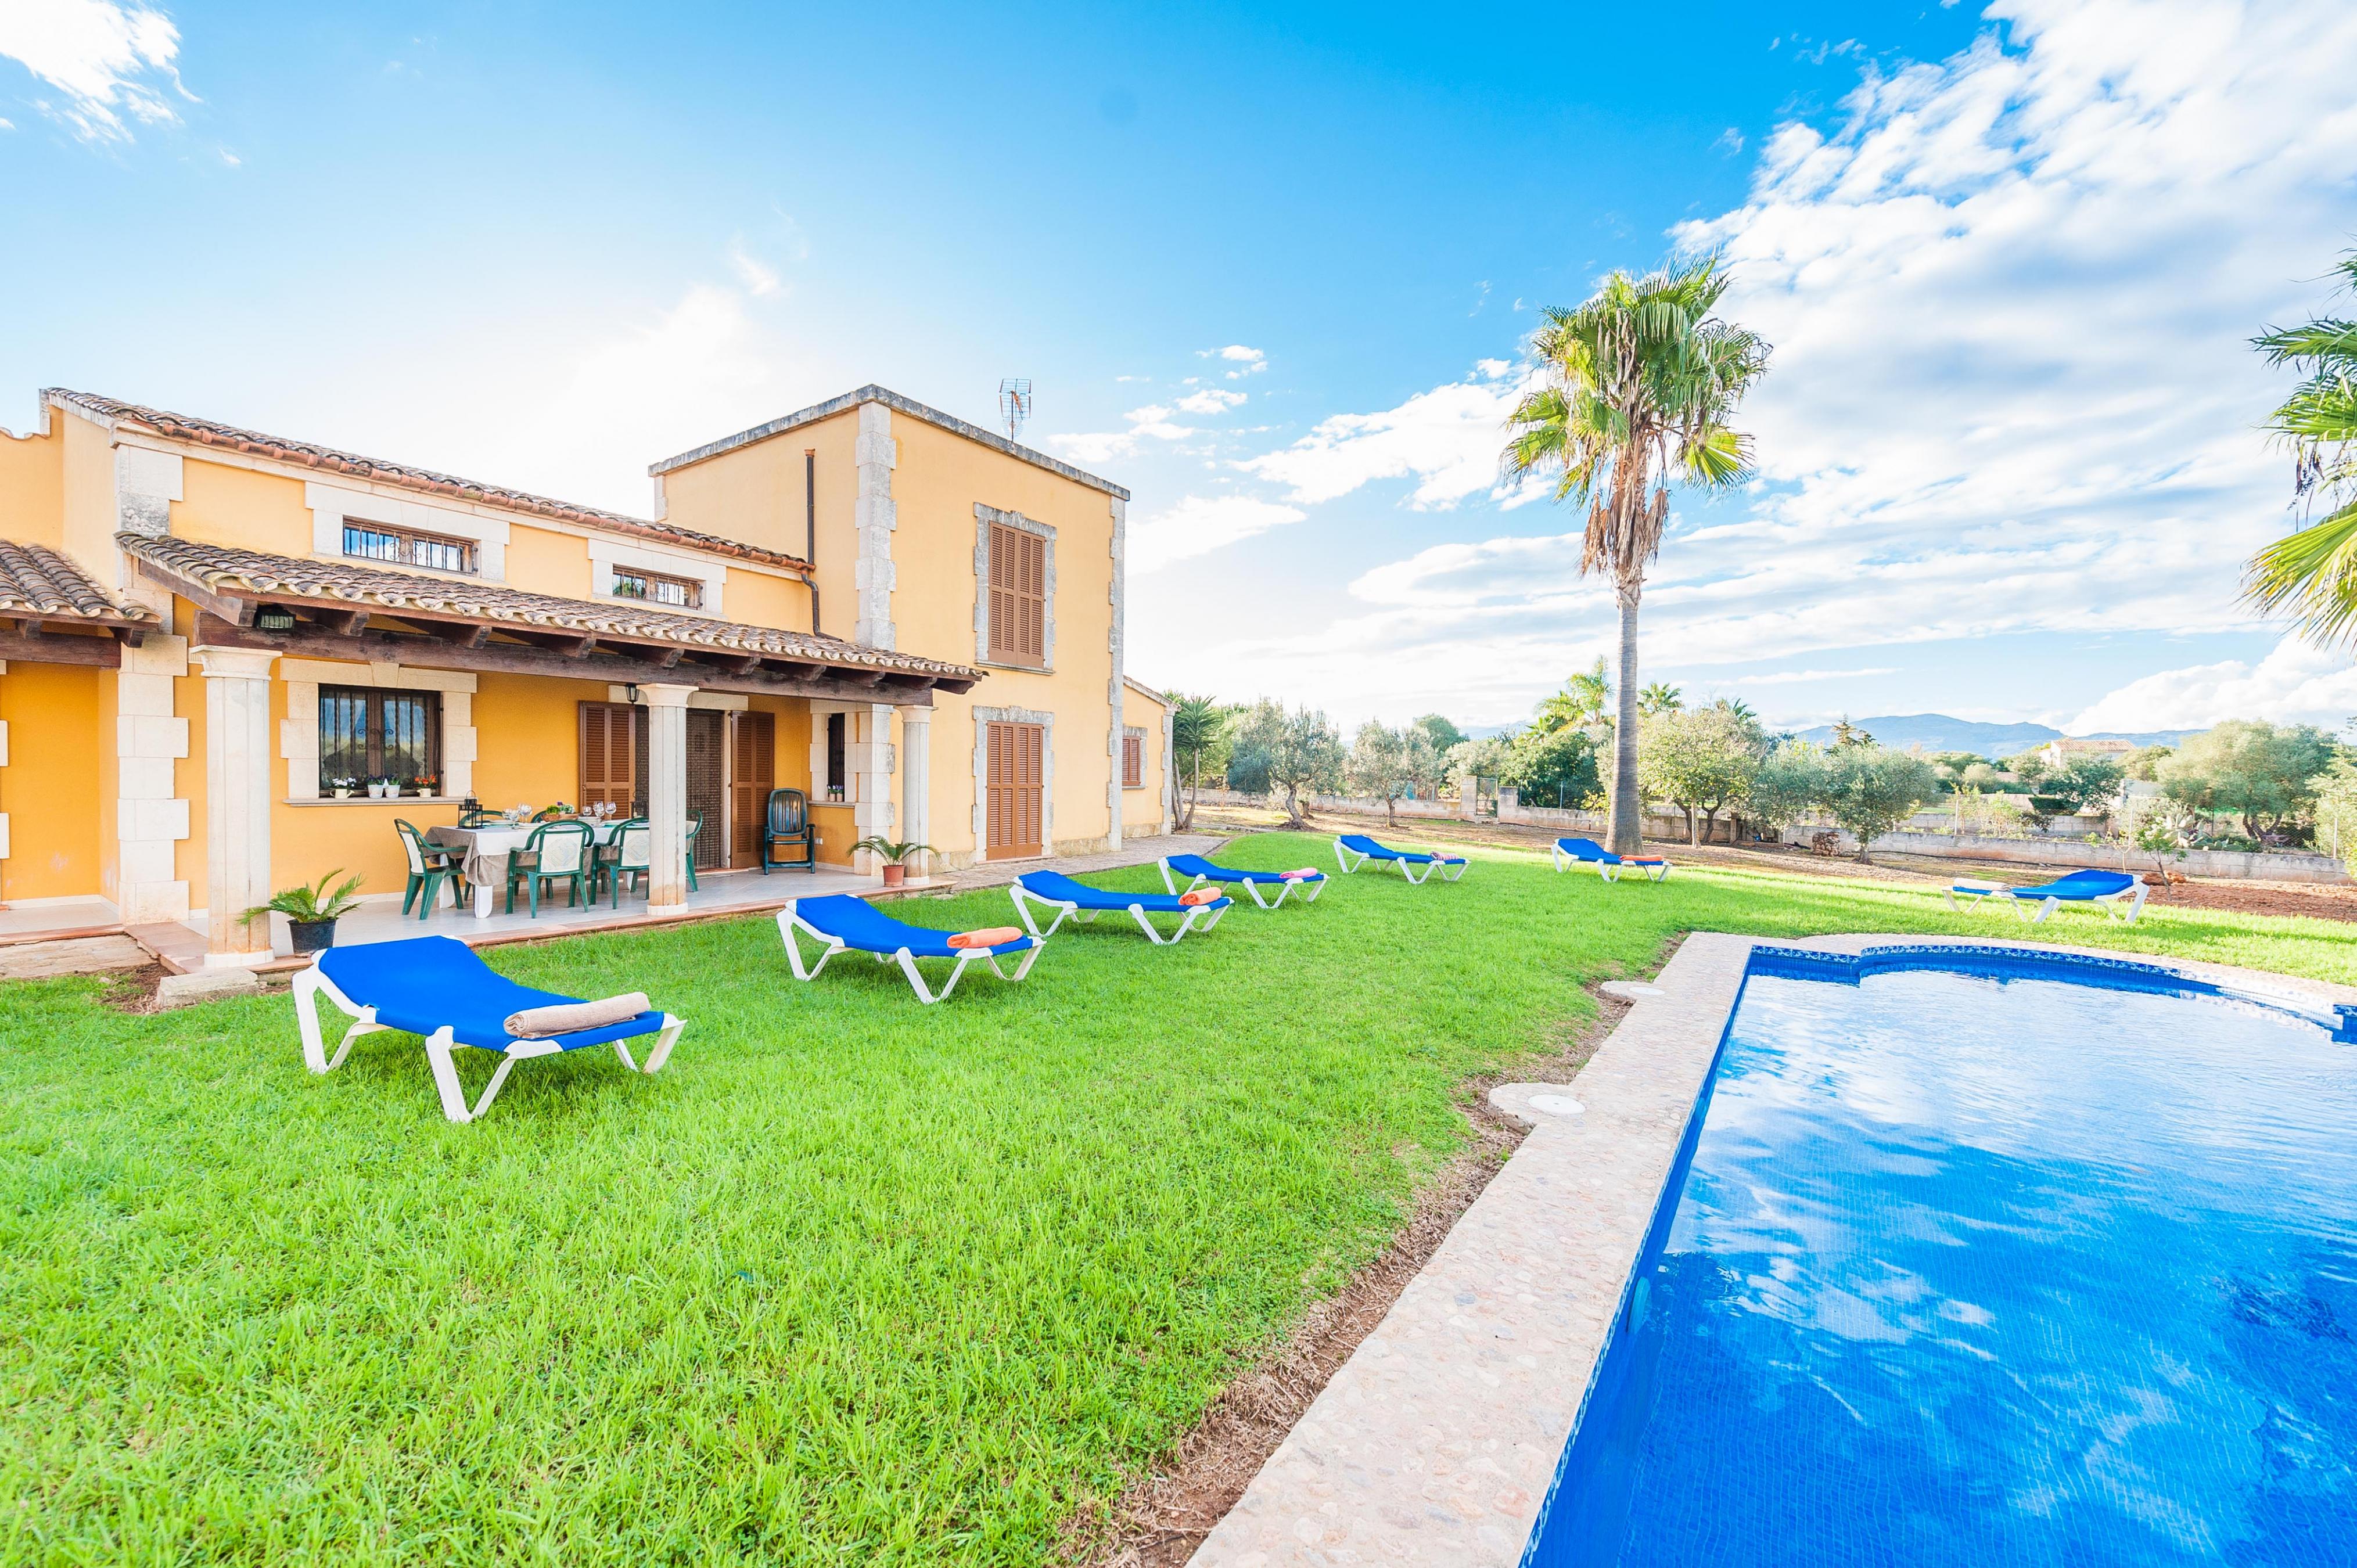 Property Image 2 - CA NA GRANADA - Villa with private pool in Muro. Free WiFi